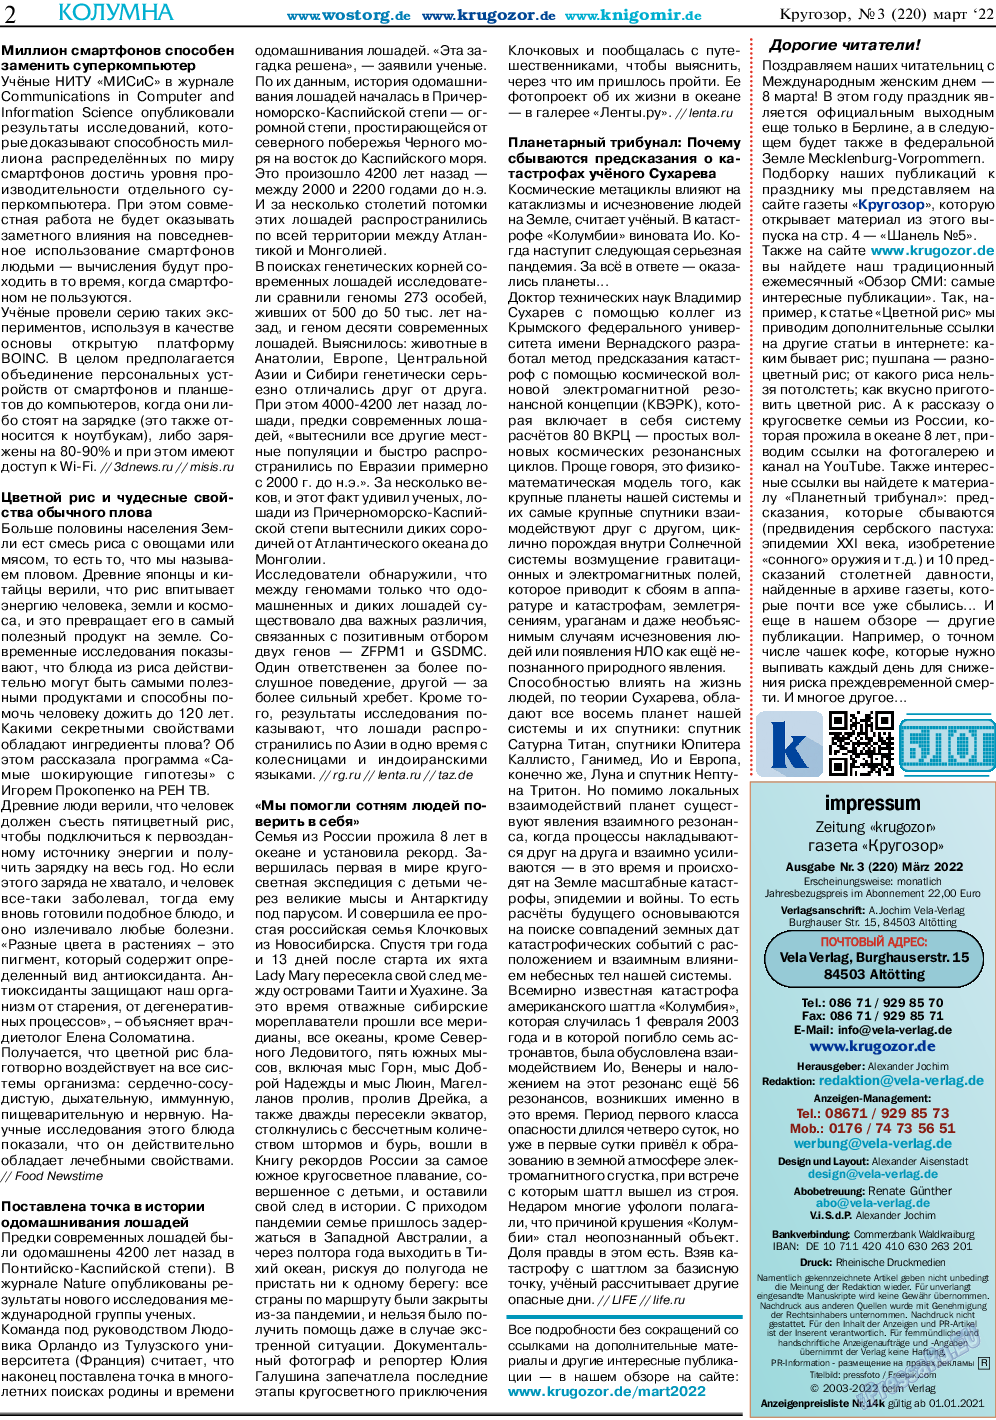 Кругозор, газета. 2022 №3 стр.2